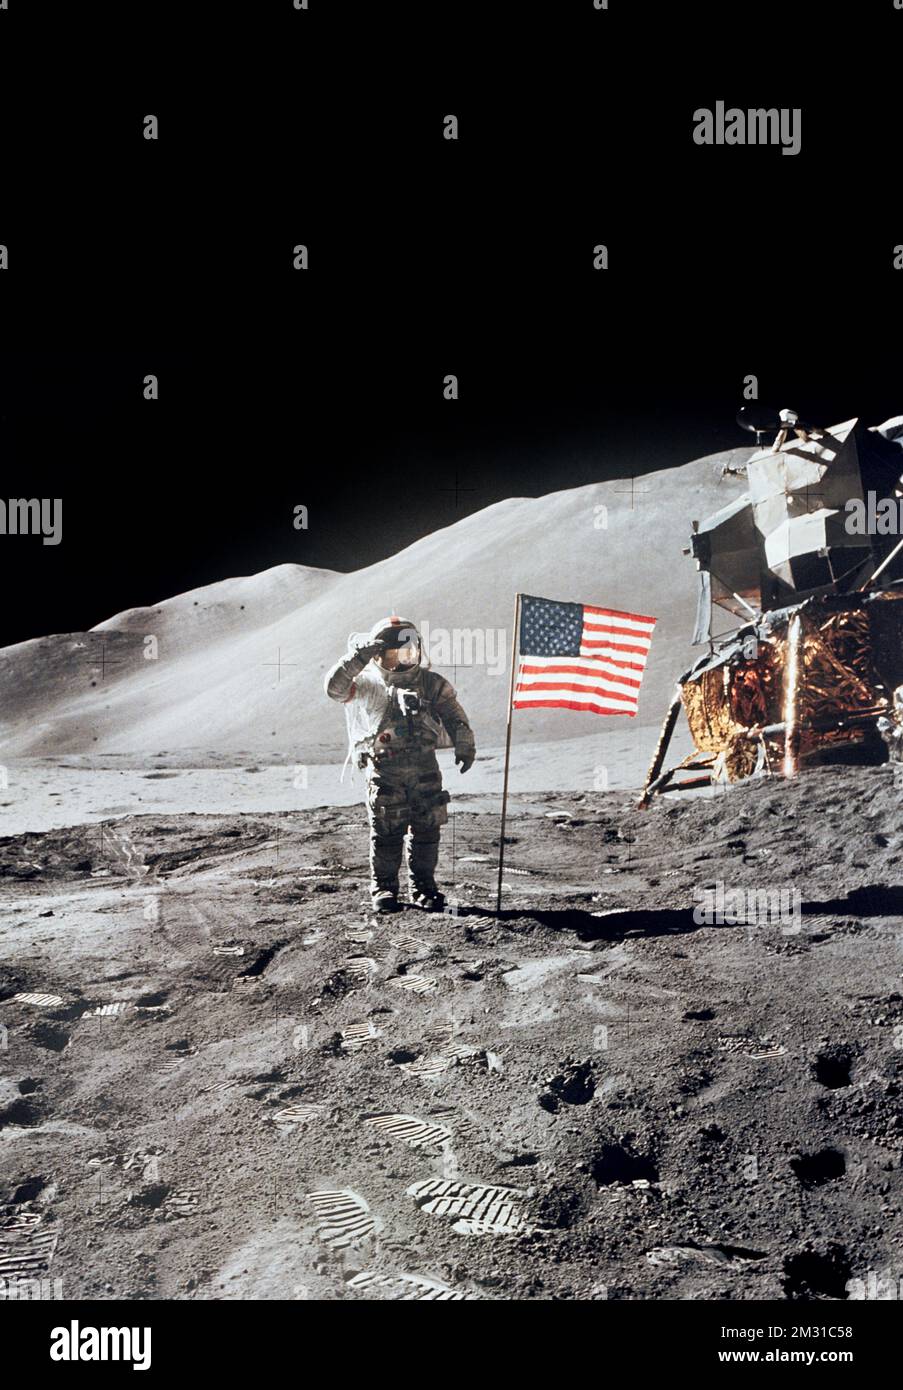 Die Mondoberfläche. Der Astronaut David R. Scott gibt einen militärischen Gruß, während er neben der eingesetzten US-Flagge während der Apollo 15-Mondoberflächen-Extrafahrzeug-Aktivität (EVA) am Hadley-Apennine-Landeplatz steht. Die Flagge wurde gegen Ende von EVA-2 eingesetzt. Das Lunar-Modul (LM), „Falcon“, ist teilweise auf der rechten Seite sichtbar. Das Hadley Delta im Hintergrund steigt ca. 4000m (ca. 13124ft m) über die Ebene. Dieses Foto wurde von Astronaut James B. Irwin, Pilot des Mondmoduls, aufgenommen. Eine einzigartige optimierte Version eines NASA-Bildes. Kredit: JB Irwin/NASA Stockfoto